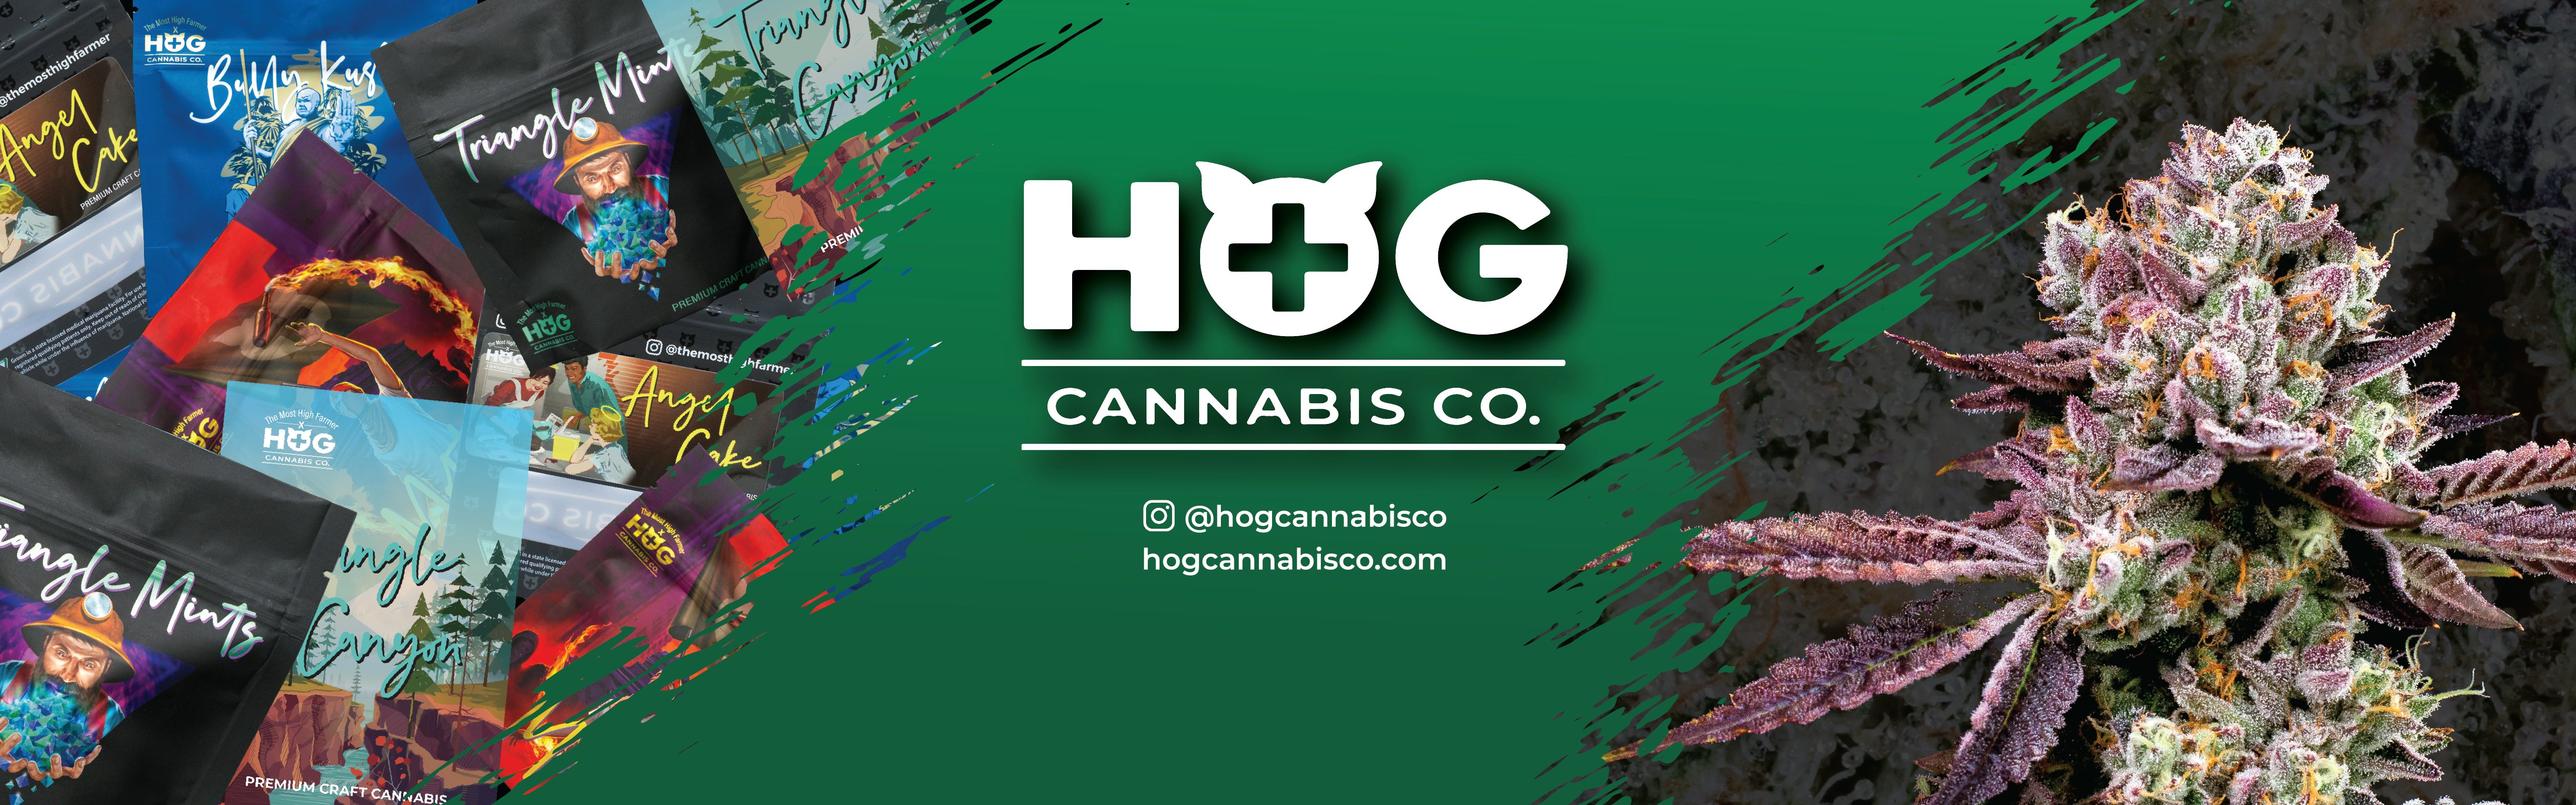 HOG Cannabis Co. banner